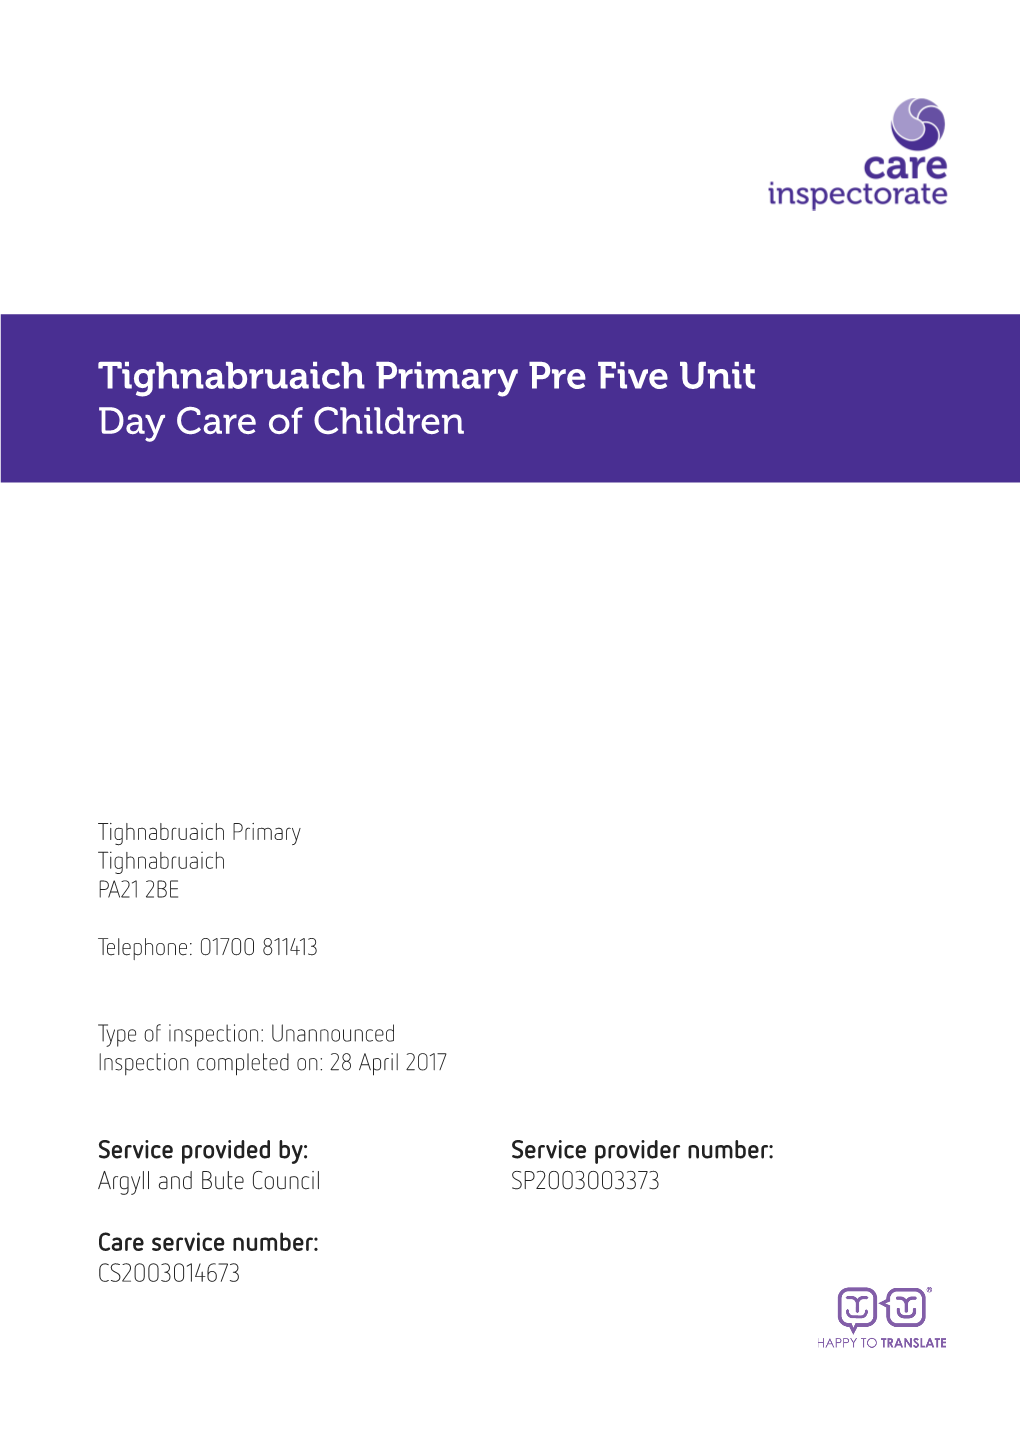 Tighnabruaich Primary Pre Five Unit Day Care of Children